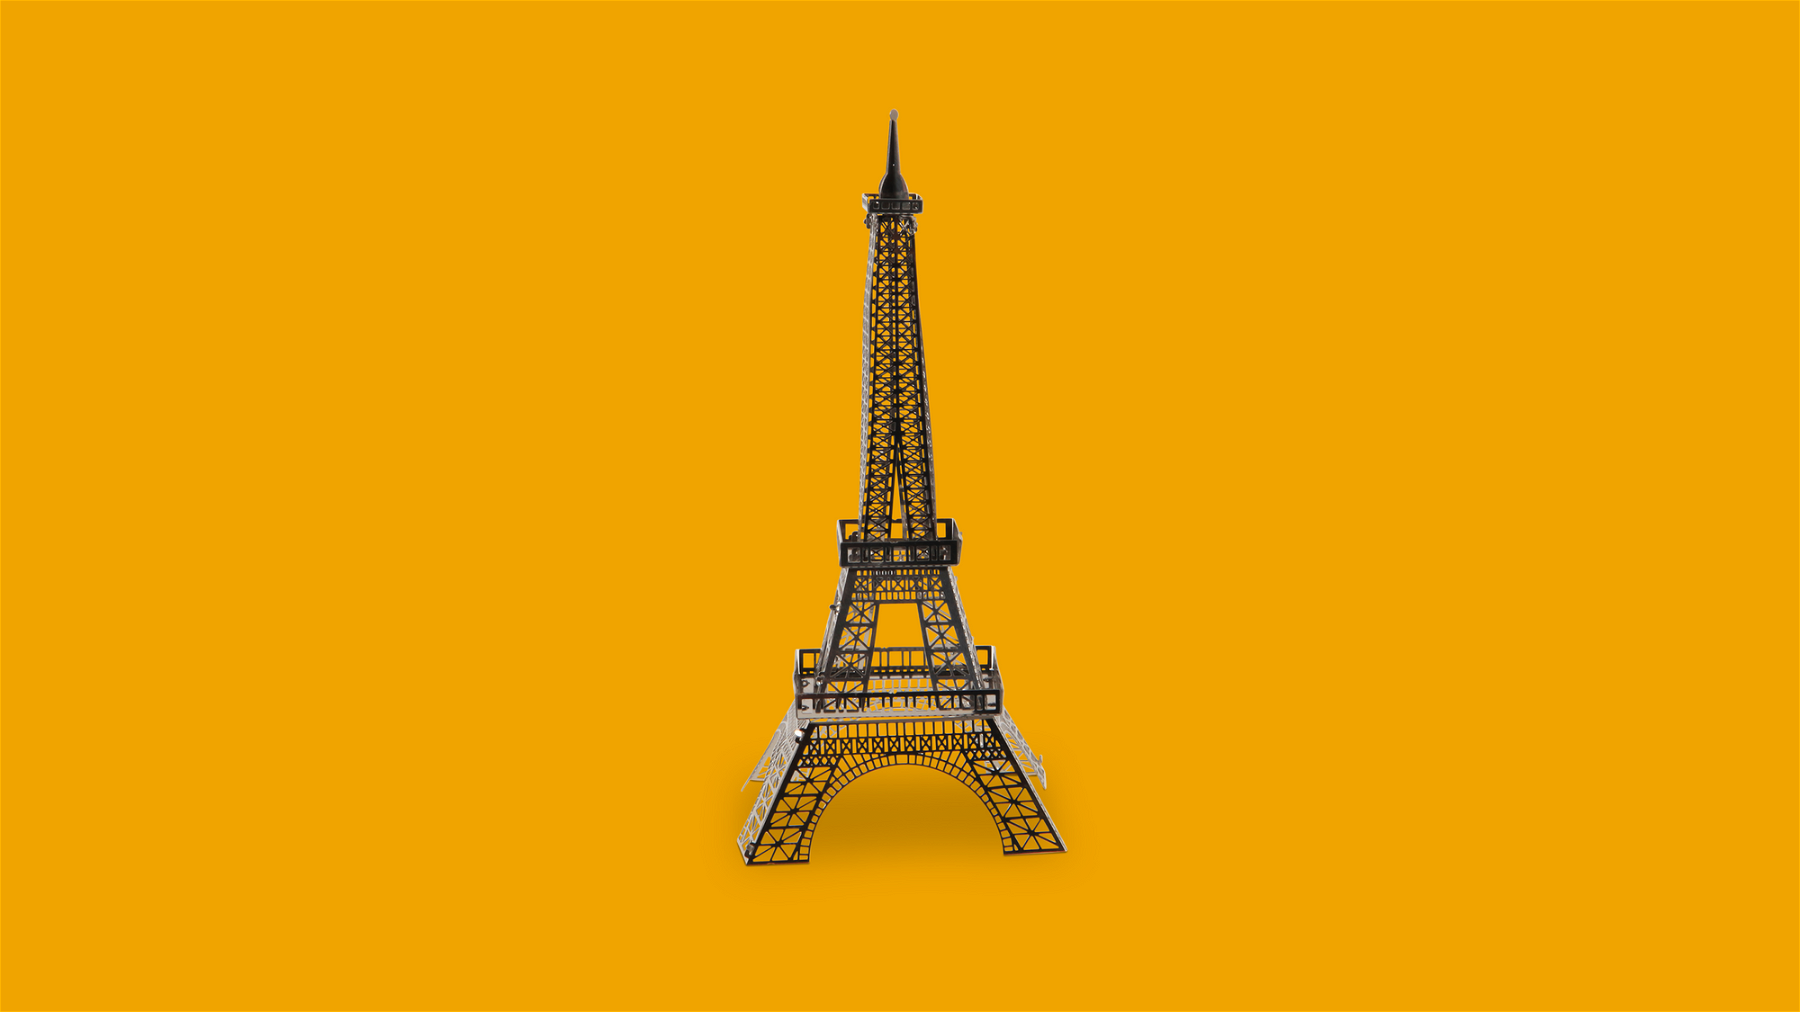 The Eiffel Tower Monetization Framework